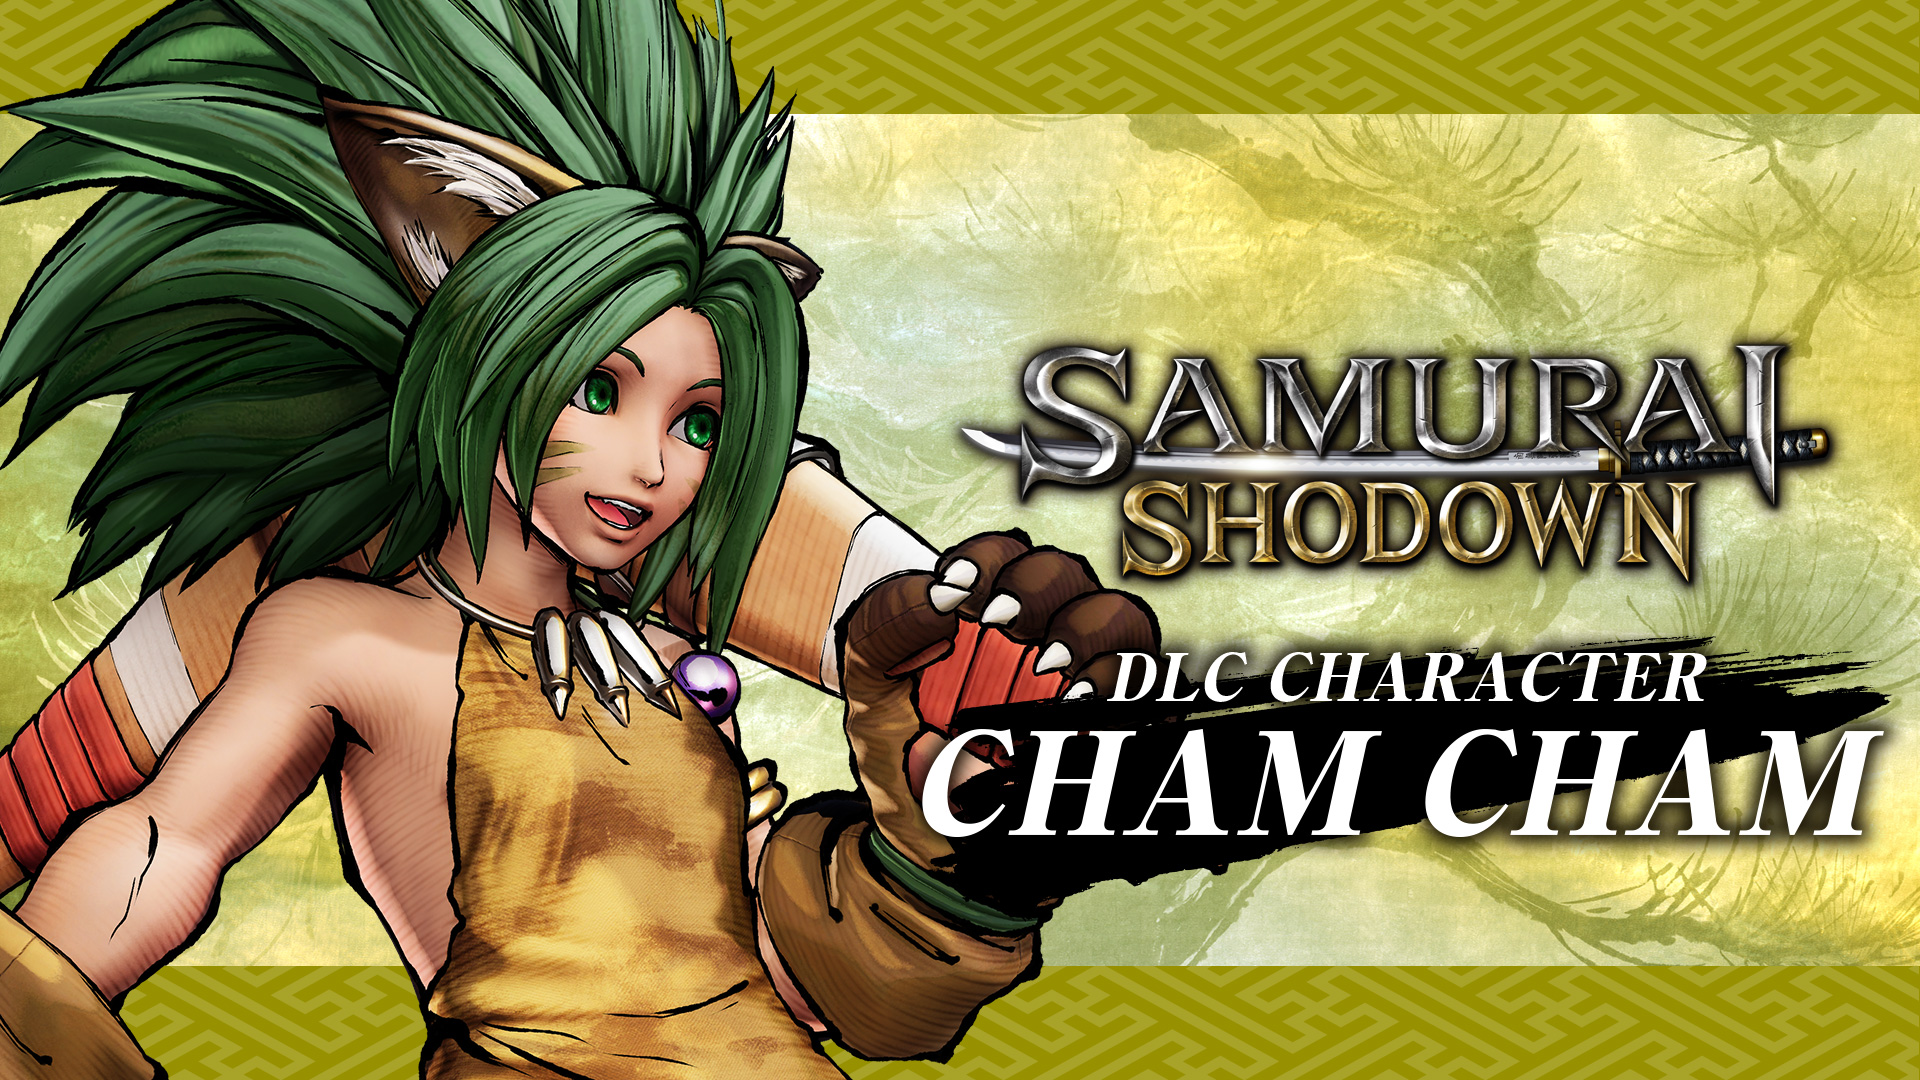 SAMURAI SHODOWN: CHARACTER "CHAM CHAM"